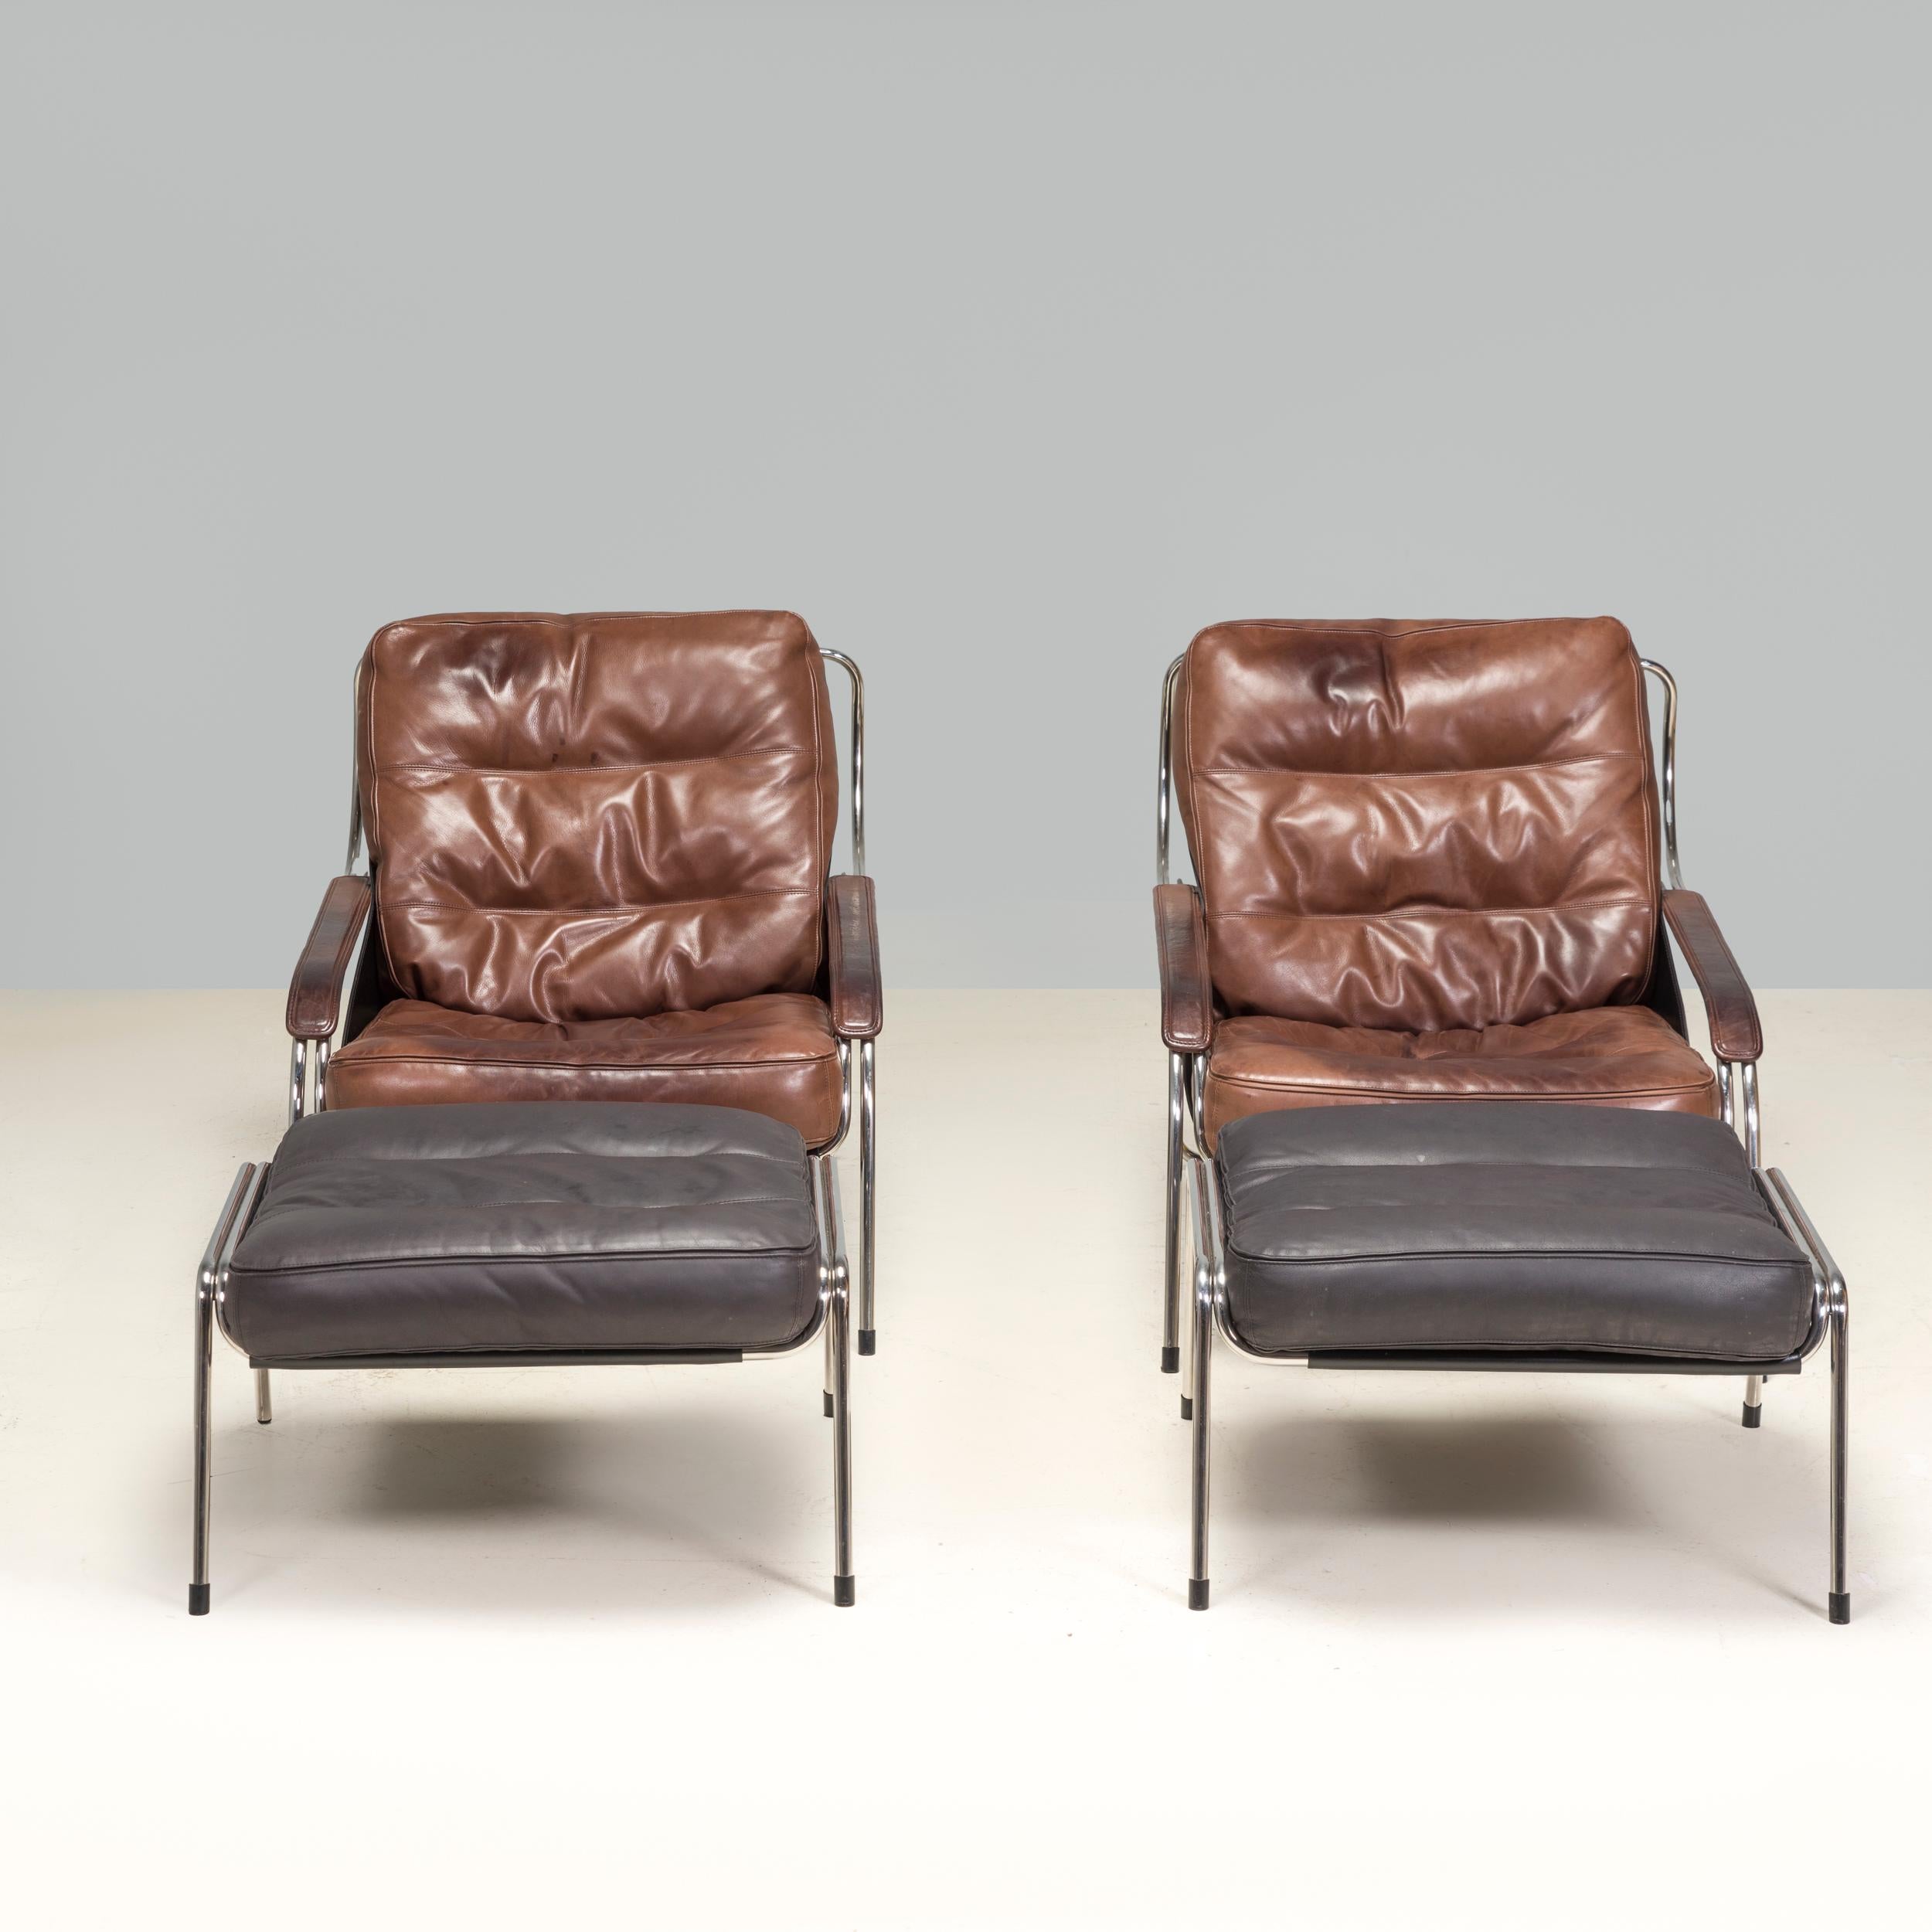 Conçue à l'origine par Marco Zanuso en 1947 pour un concours organisé par le Museum of Modern Art de New York, la chaise longue Maggiolina est devenue une icône du design et est fabriquée par Zanotta depuis 1972.

Exemple fantastique du design